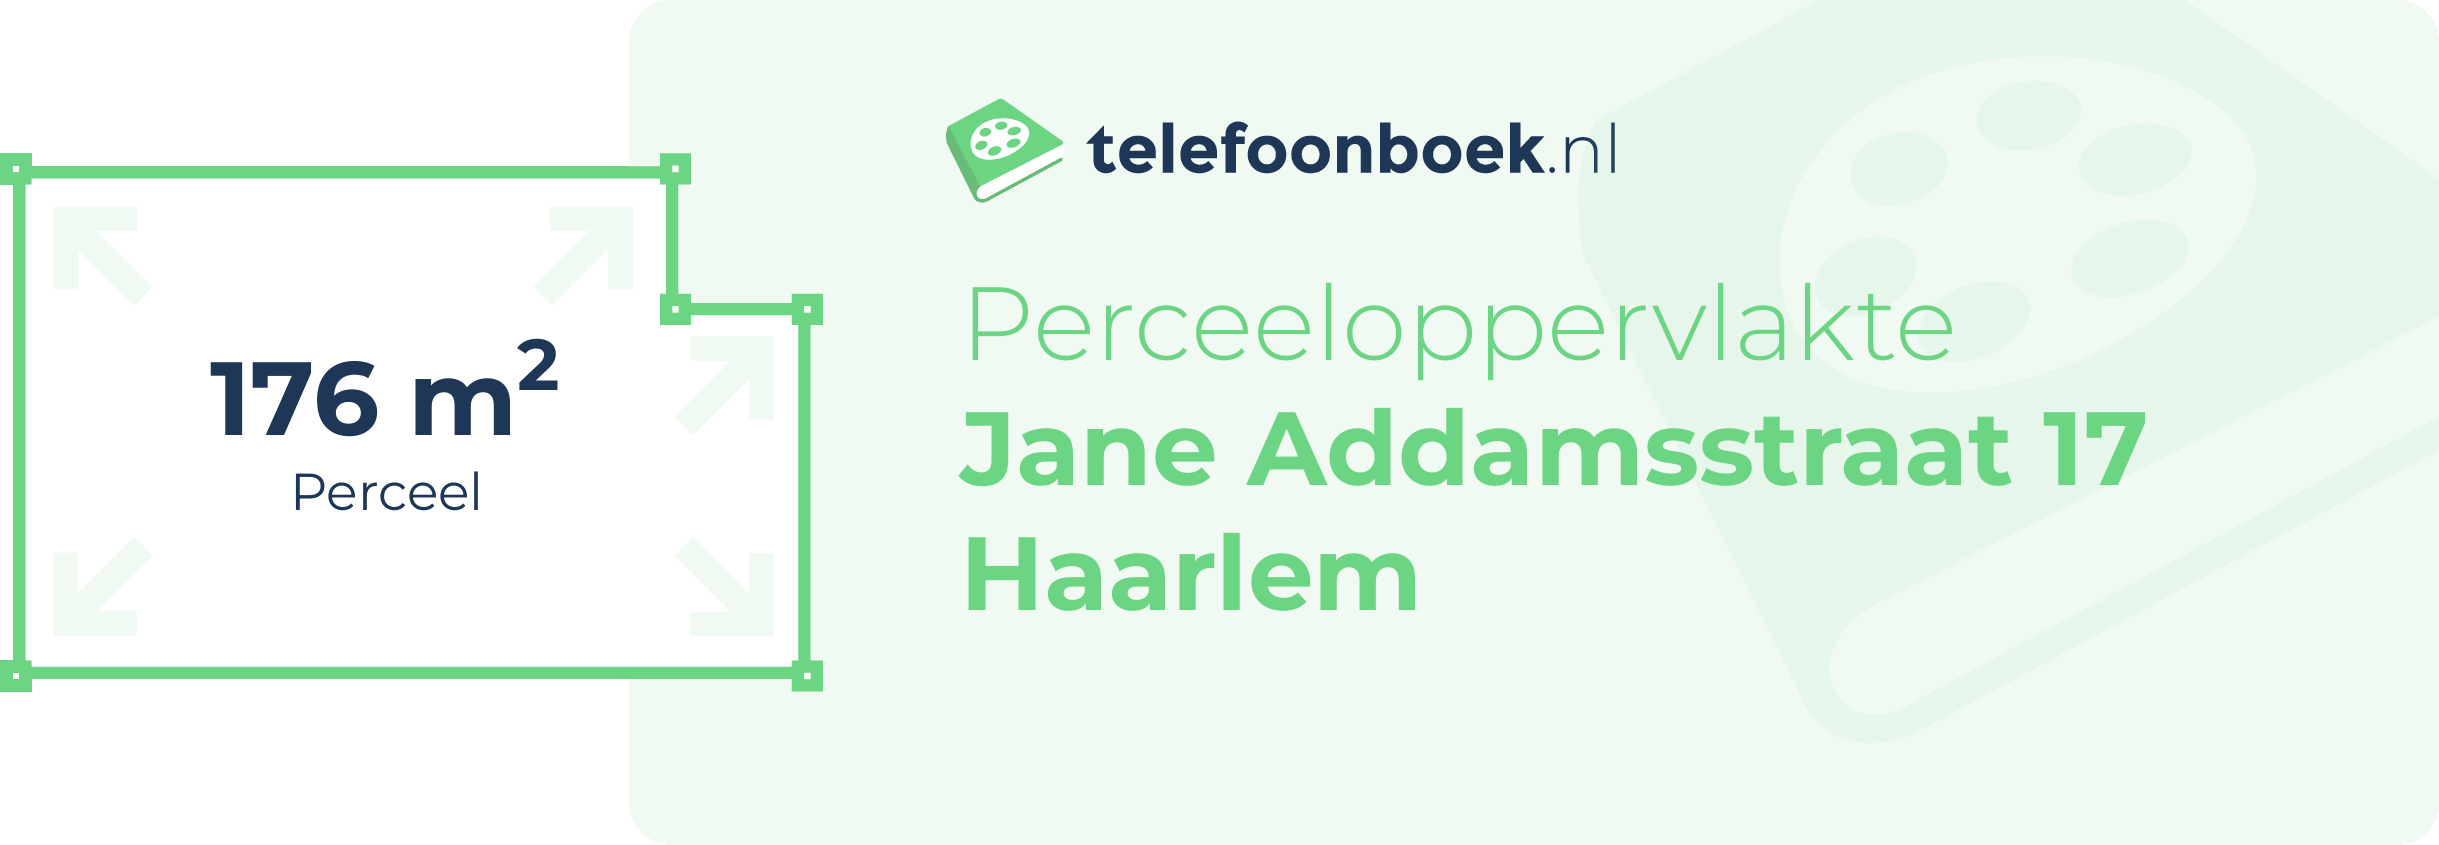 Perceeloppervlakte Jane Addamsstraat 17 Haarlem